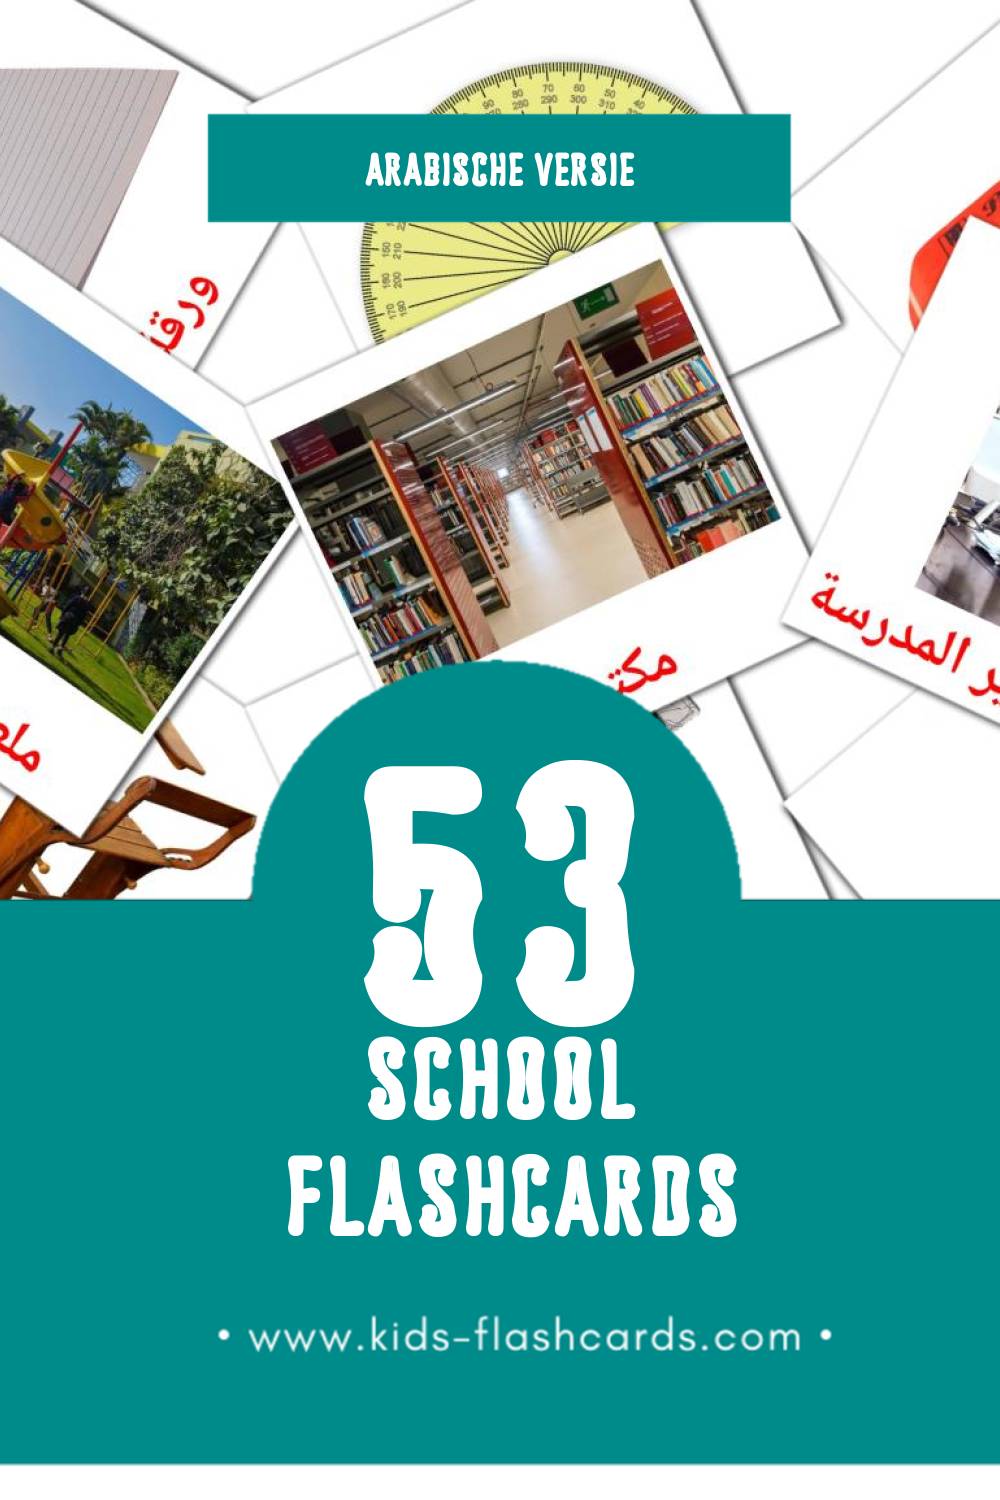 Visuele مدرسة Flashcards voor Kleuters (53 kaarten in het Arabisch)